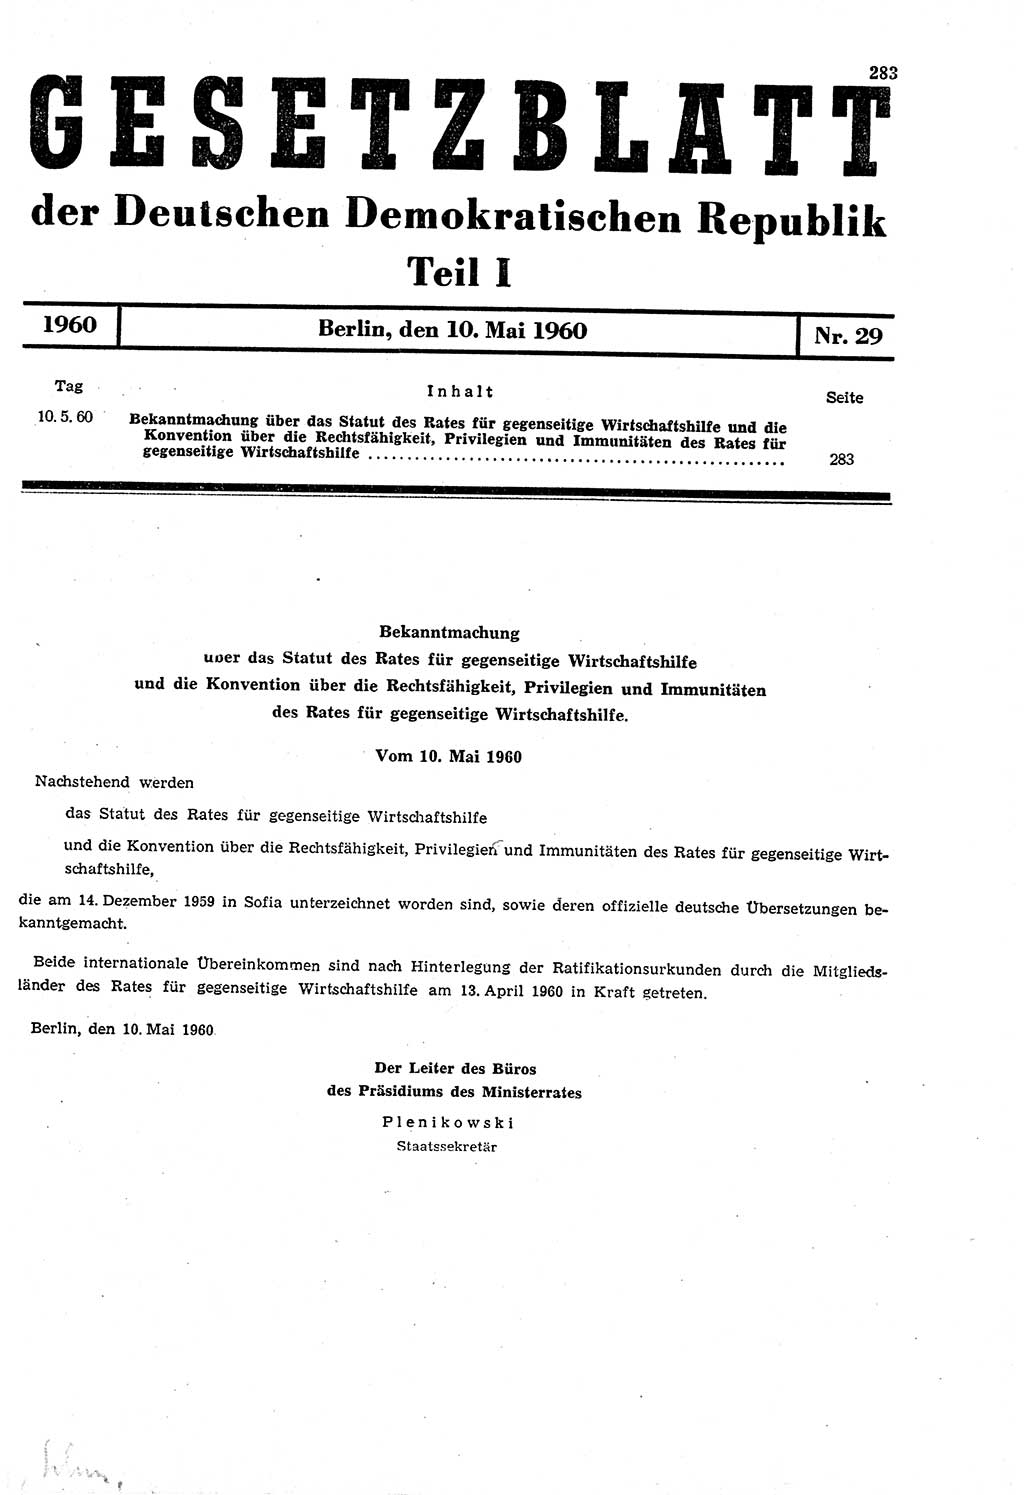 Gesetzblatt (GBl.) der Deutschen Demokratischen Republik (DDR) Teil Ⅰ 1960, Seite 283 (GBl. DDR Ⅰ 1960, S. 283)